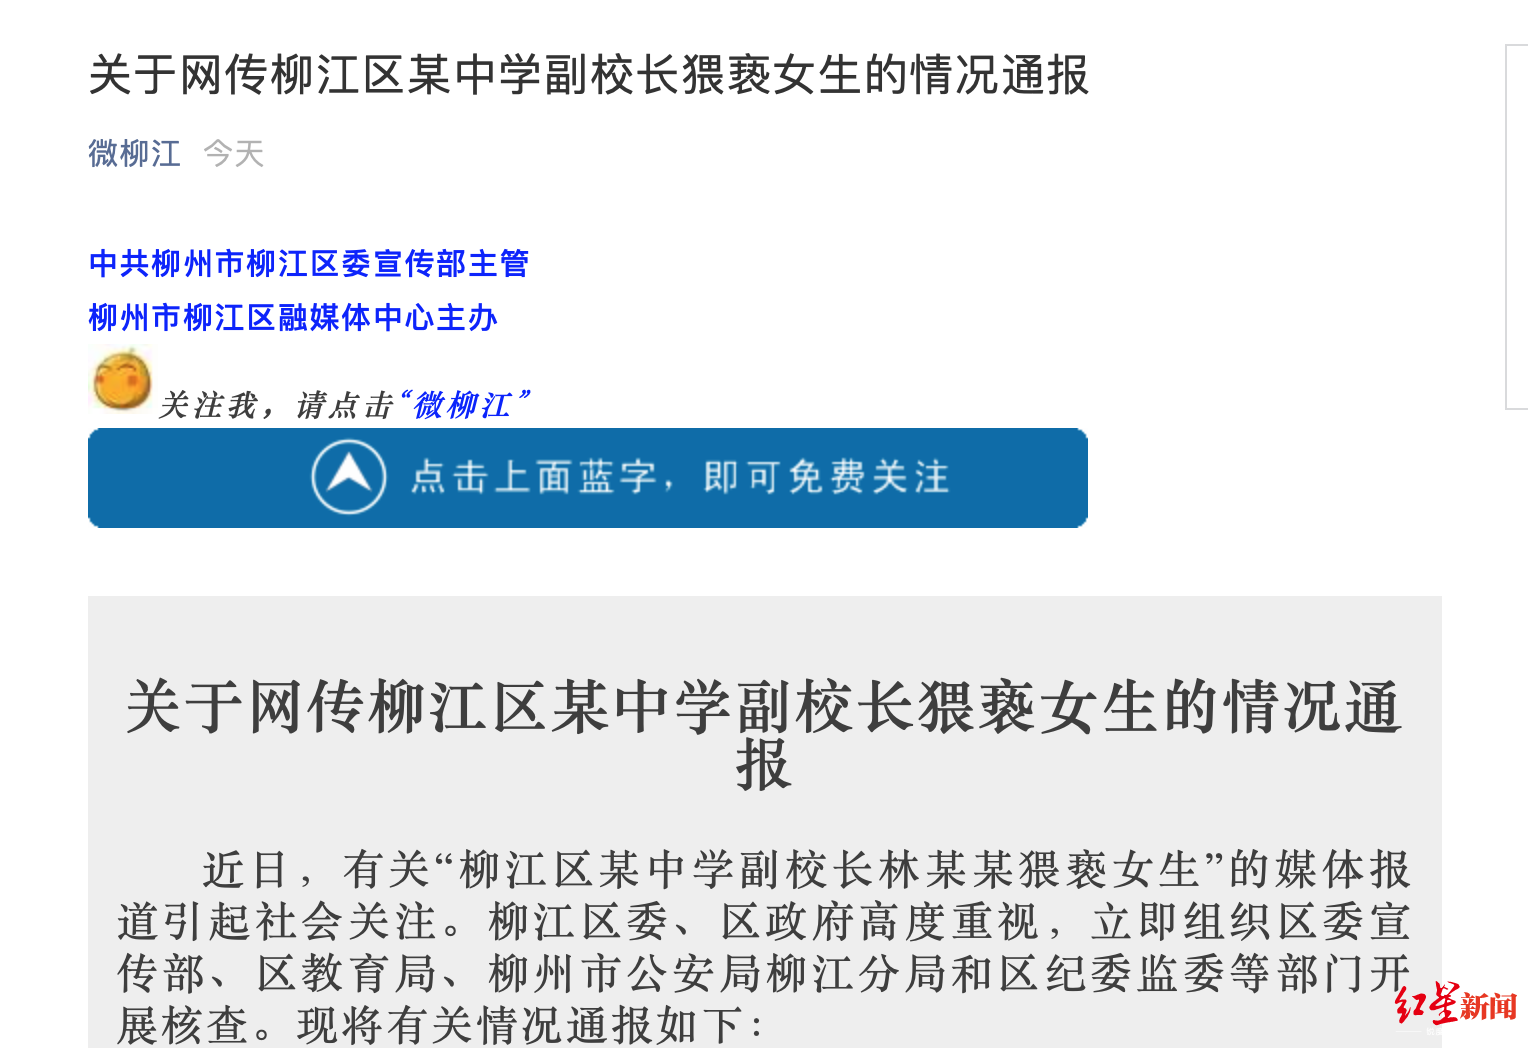 柳江女生举报中学副校长猥亵学生 官方通报并征集线索